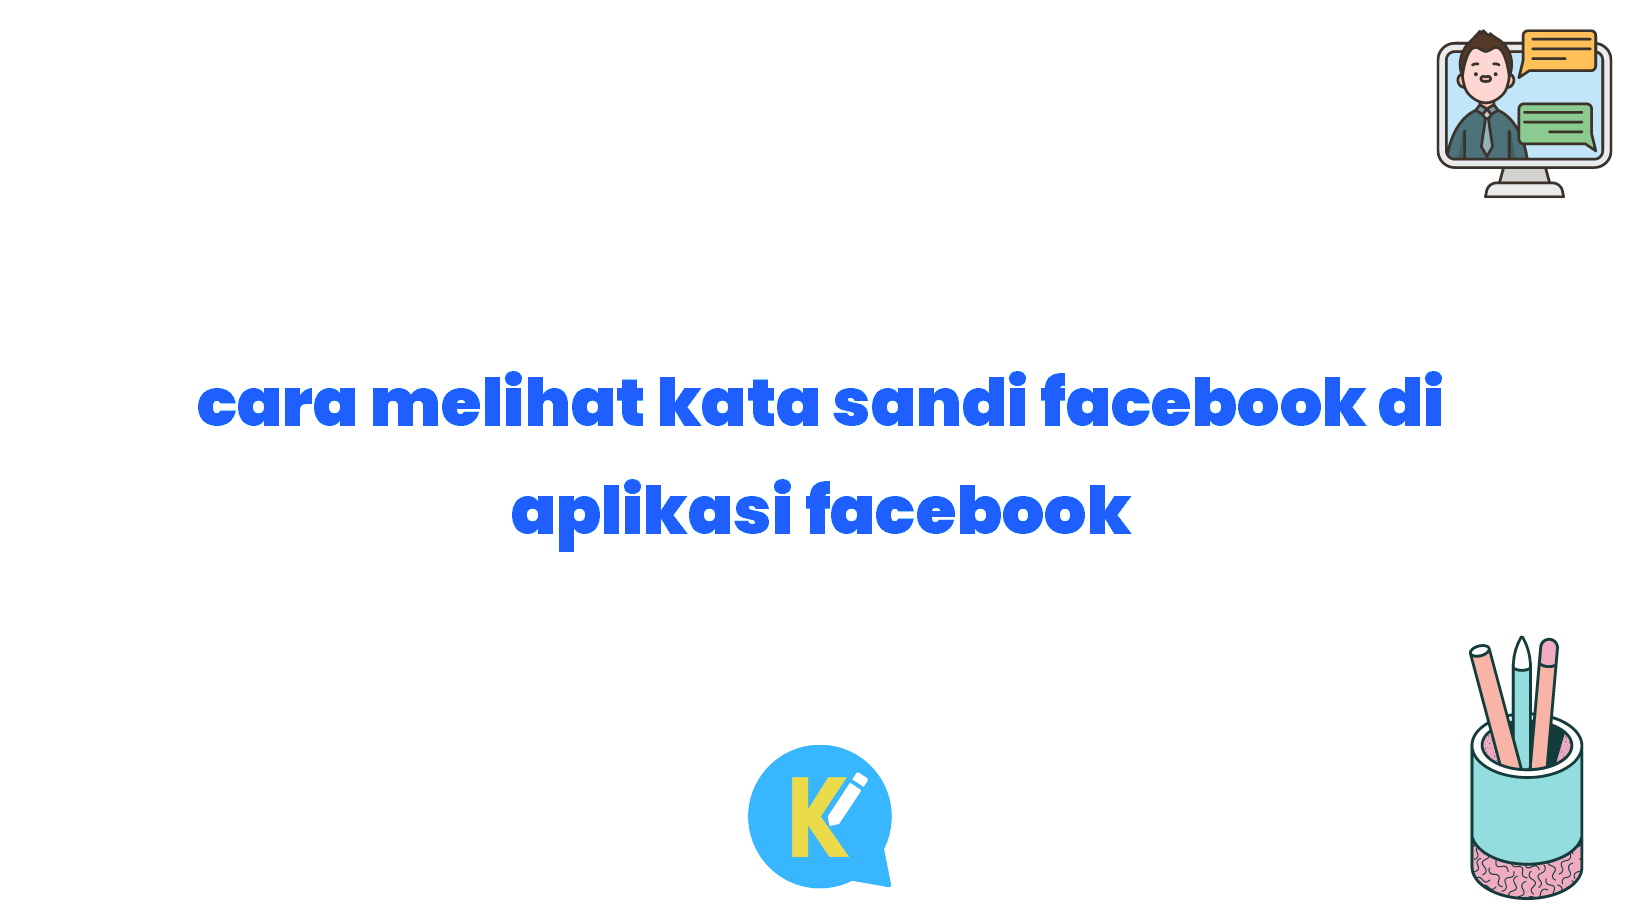 cara melihat kata sandi facebook di aplikasi facebook